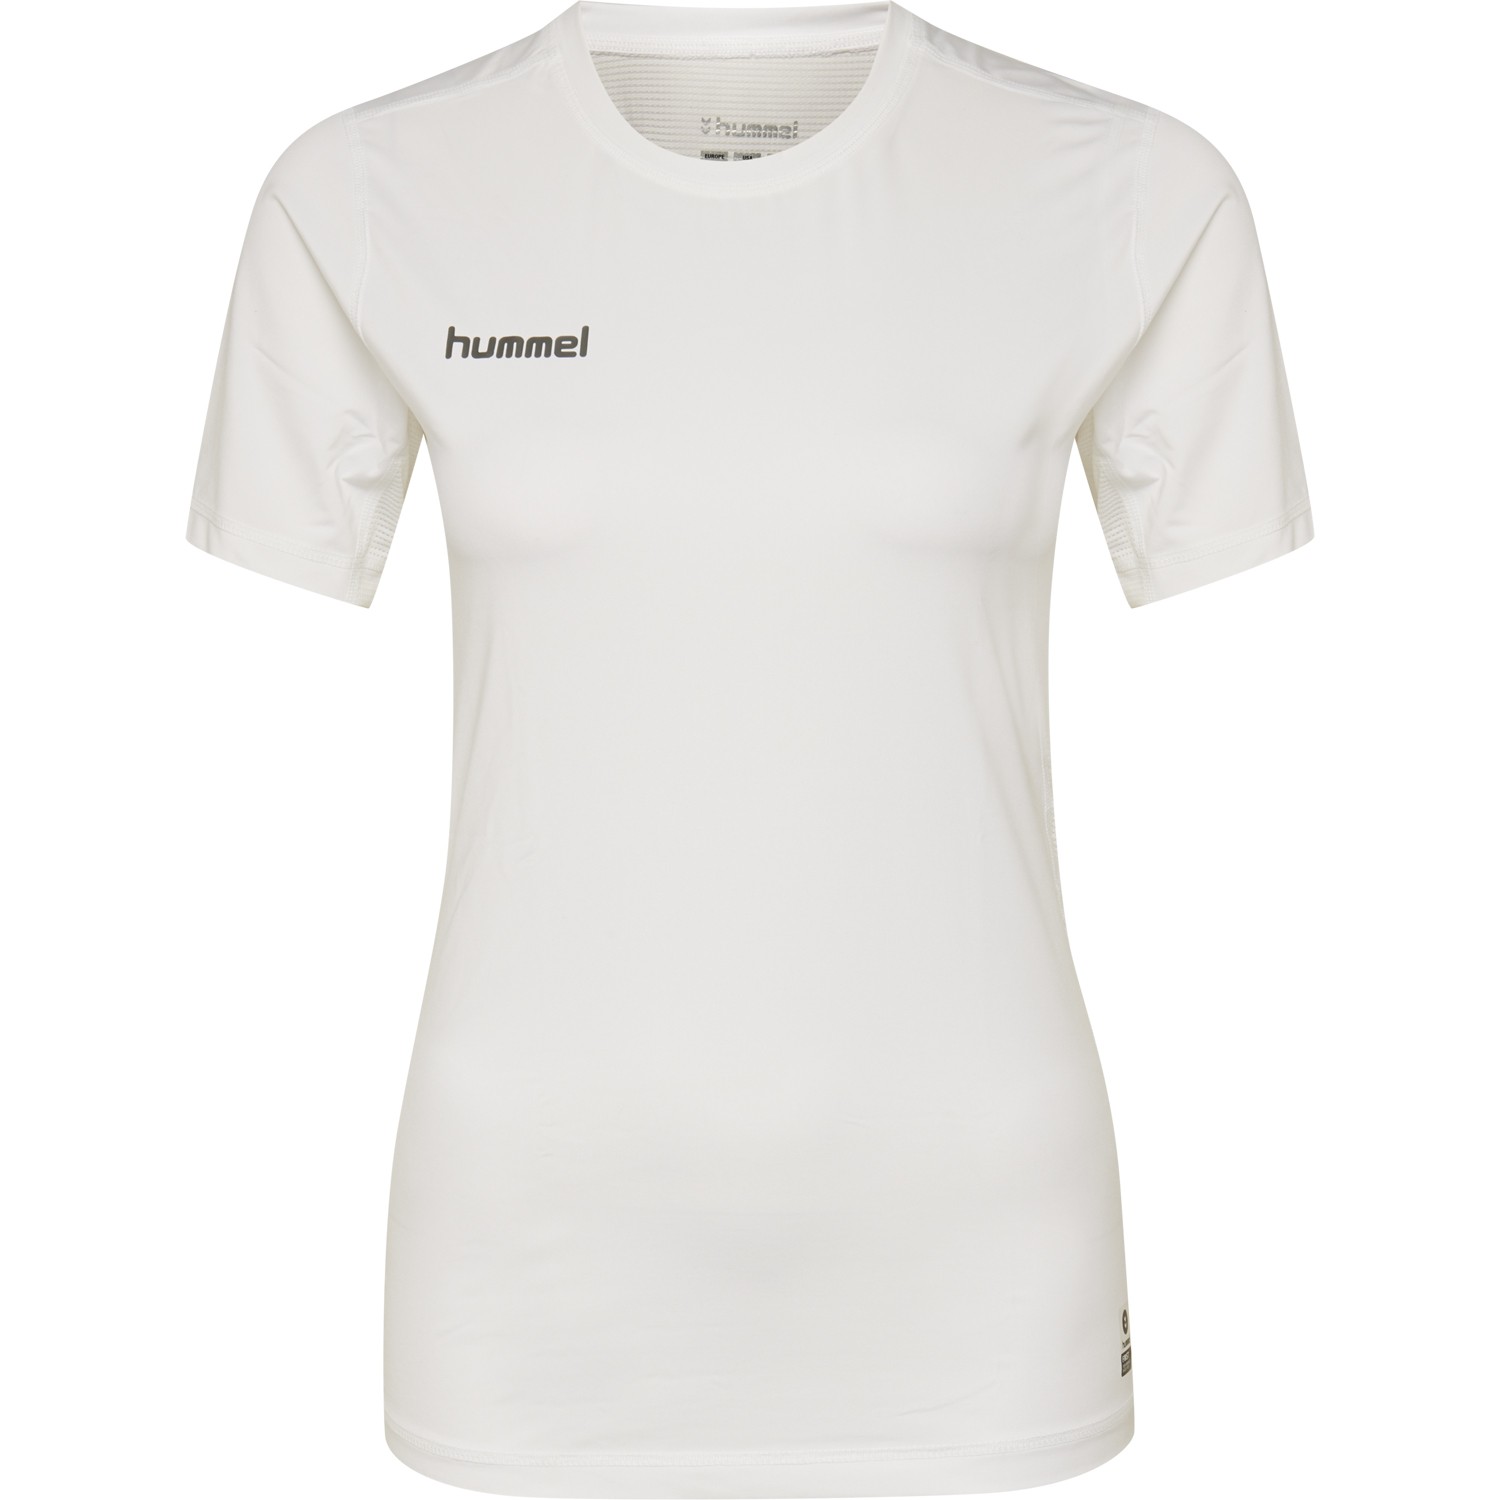 Hummel First Performance T-Shirt Damen